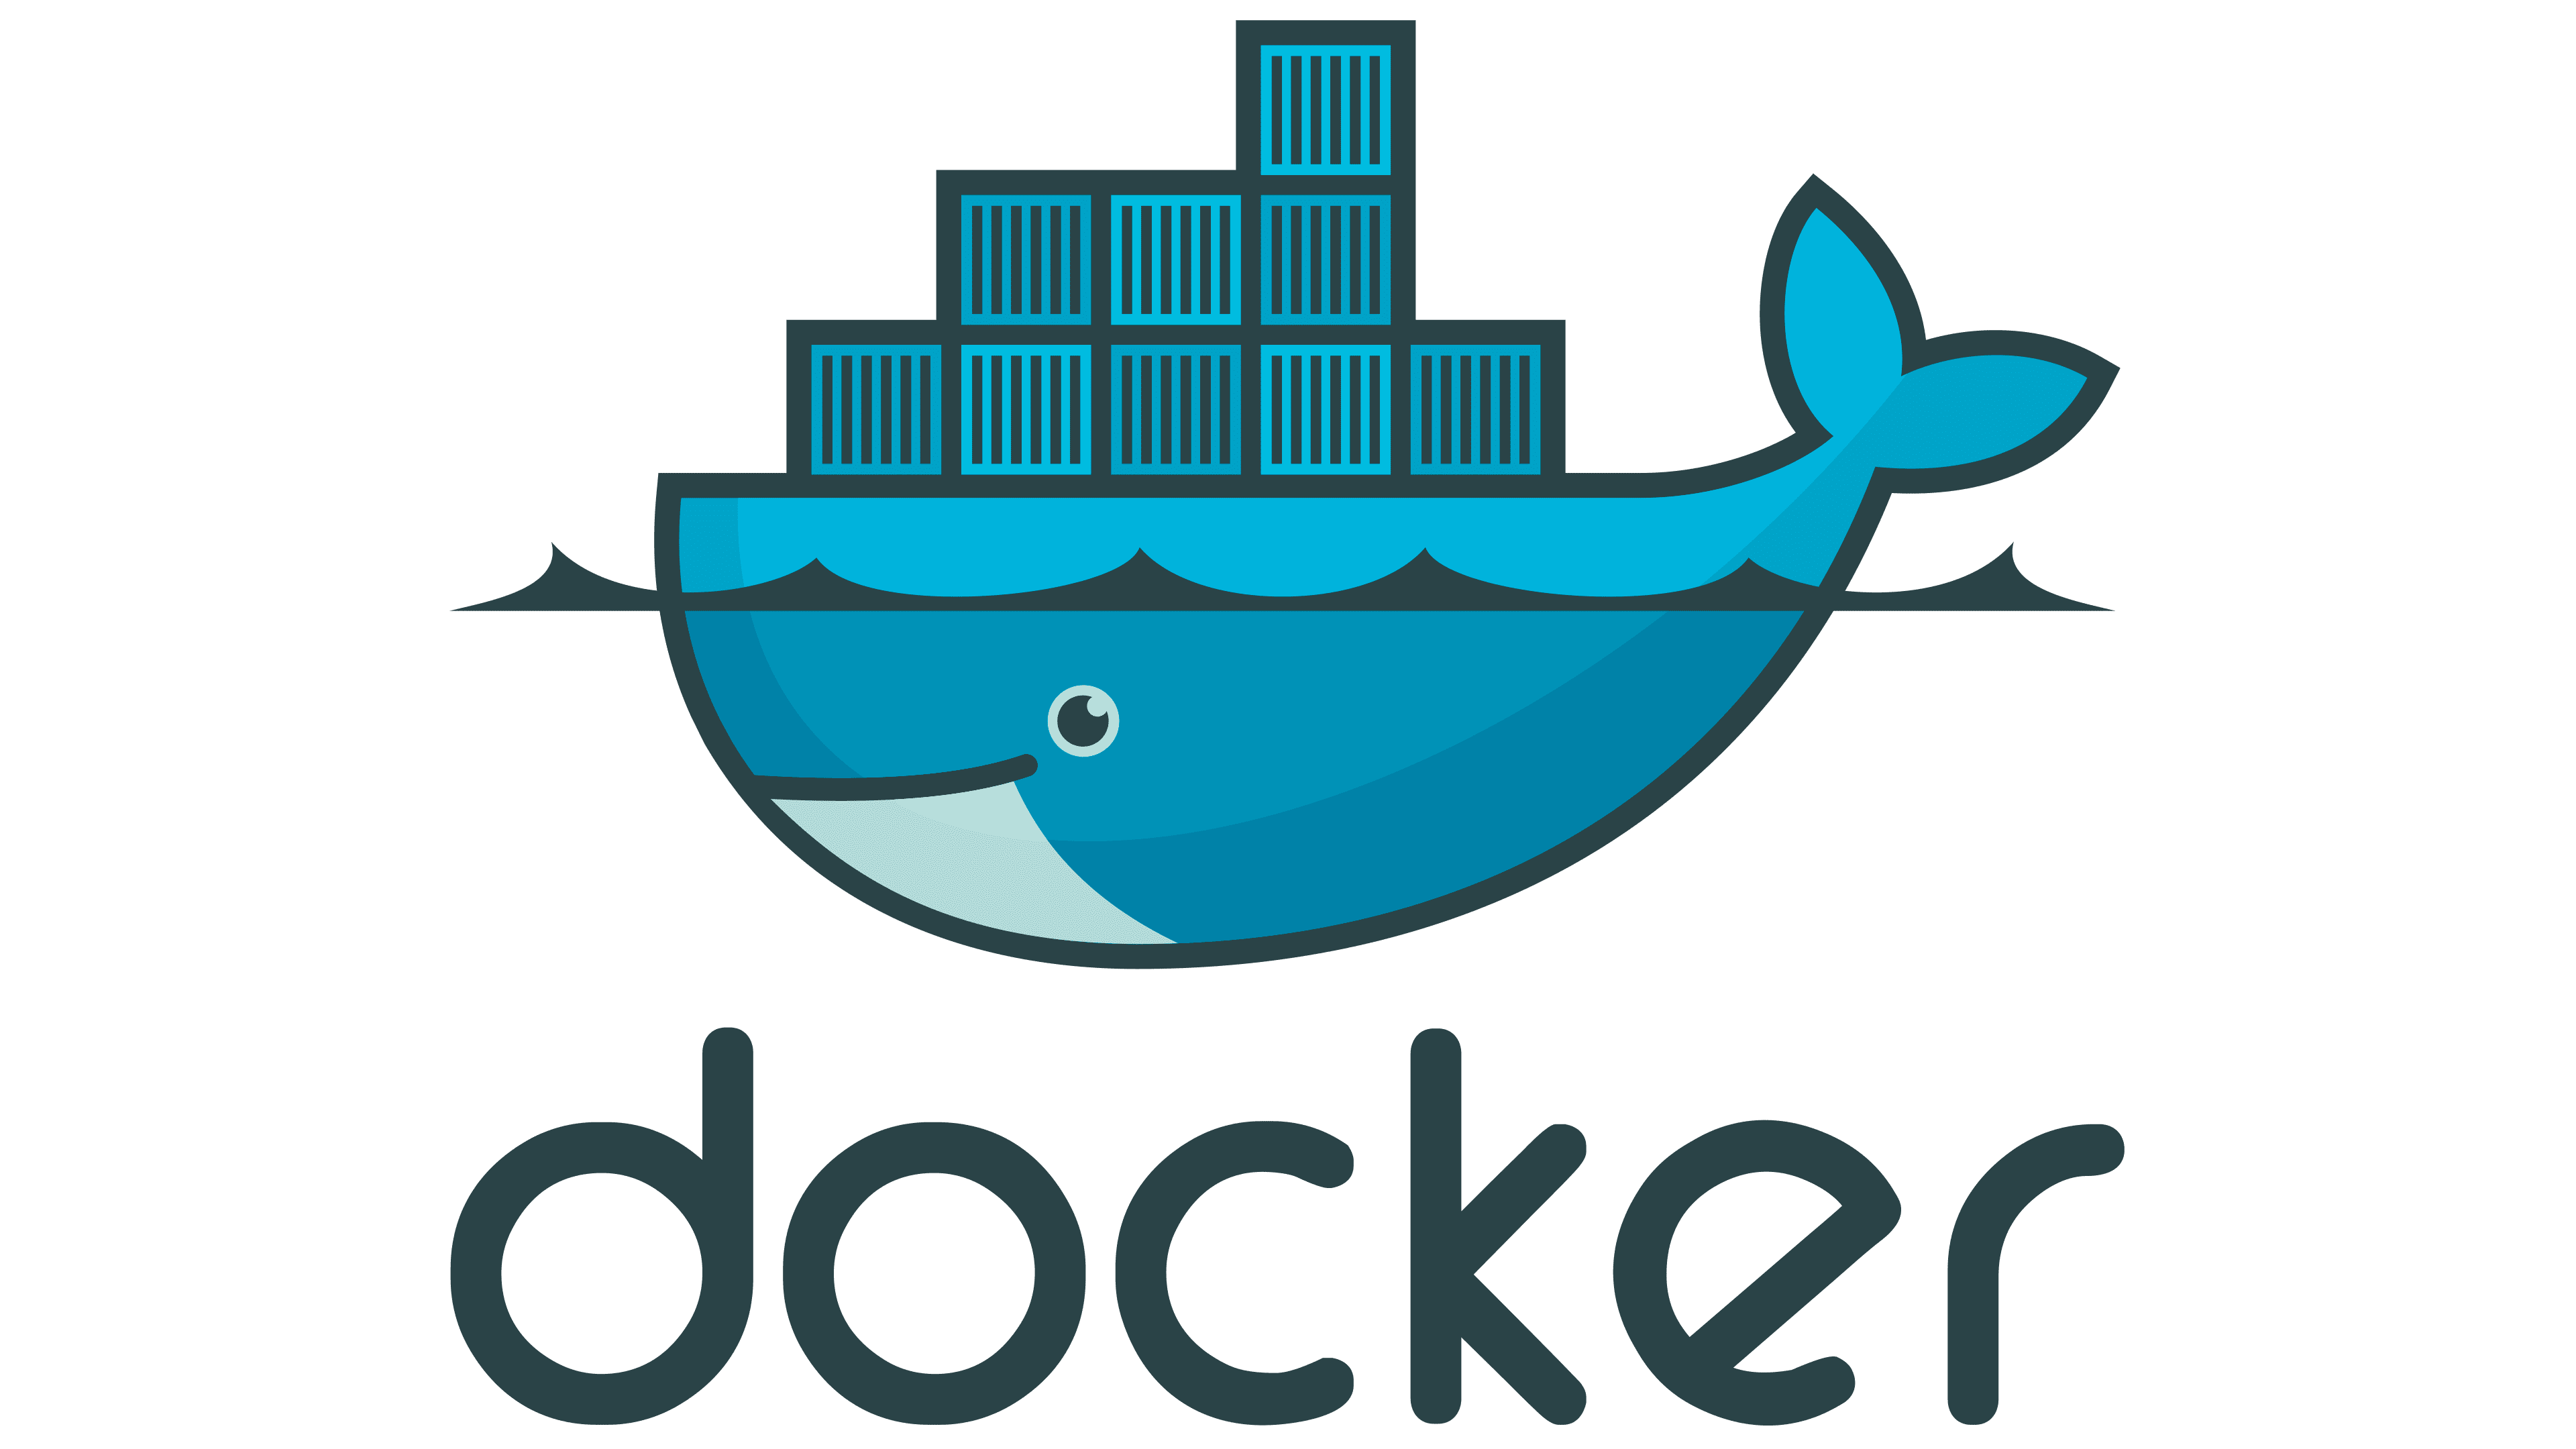 The Docker logo